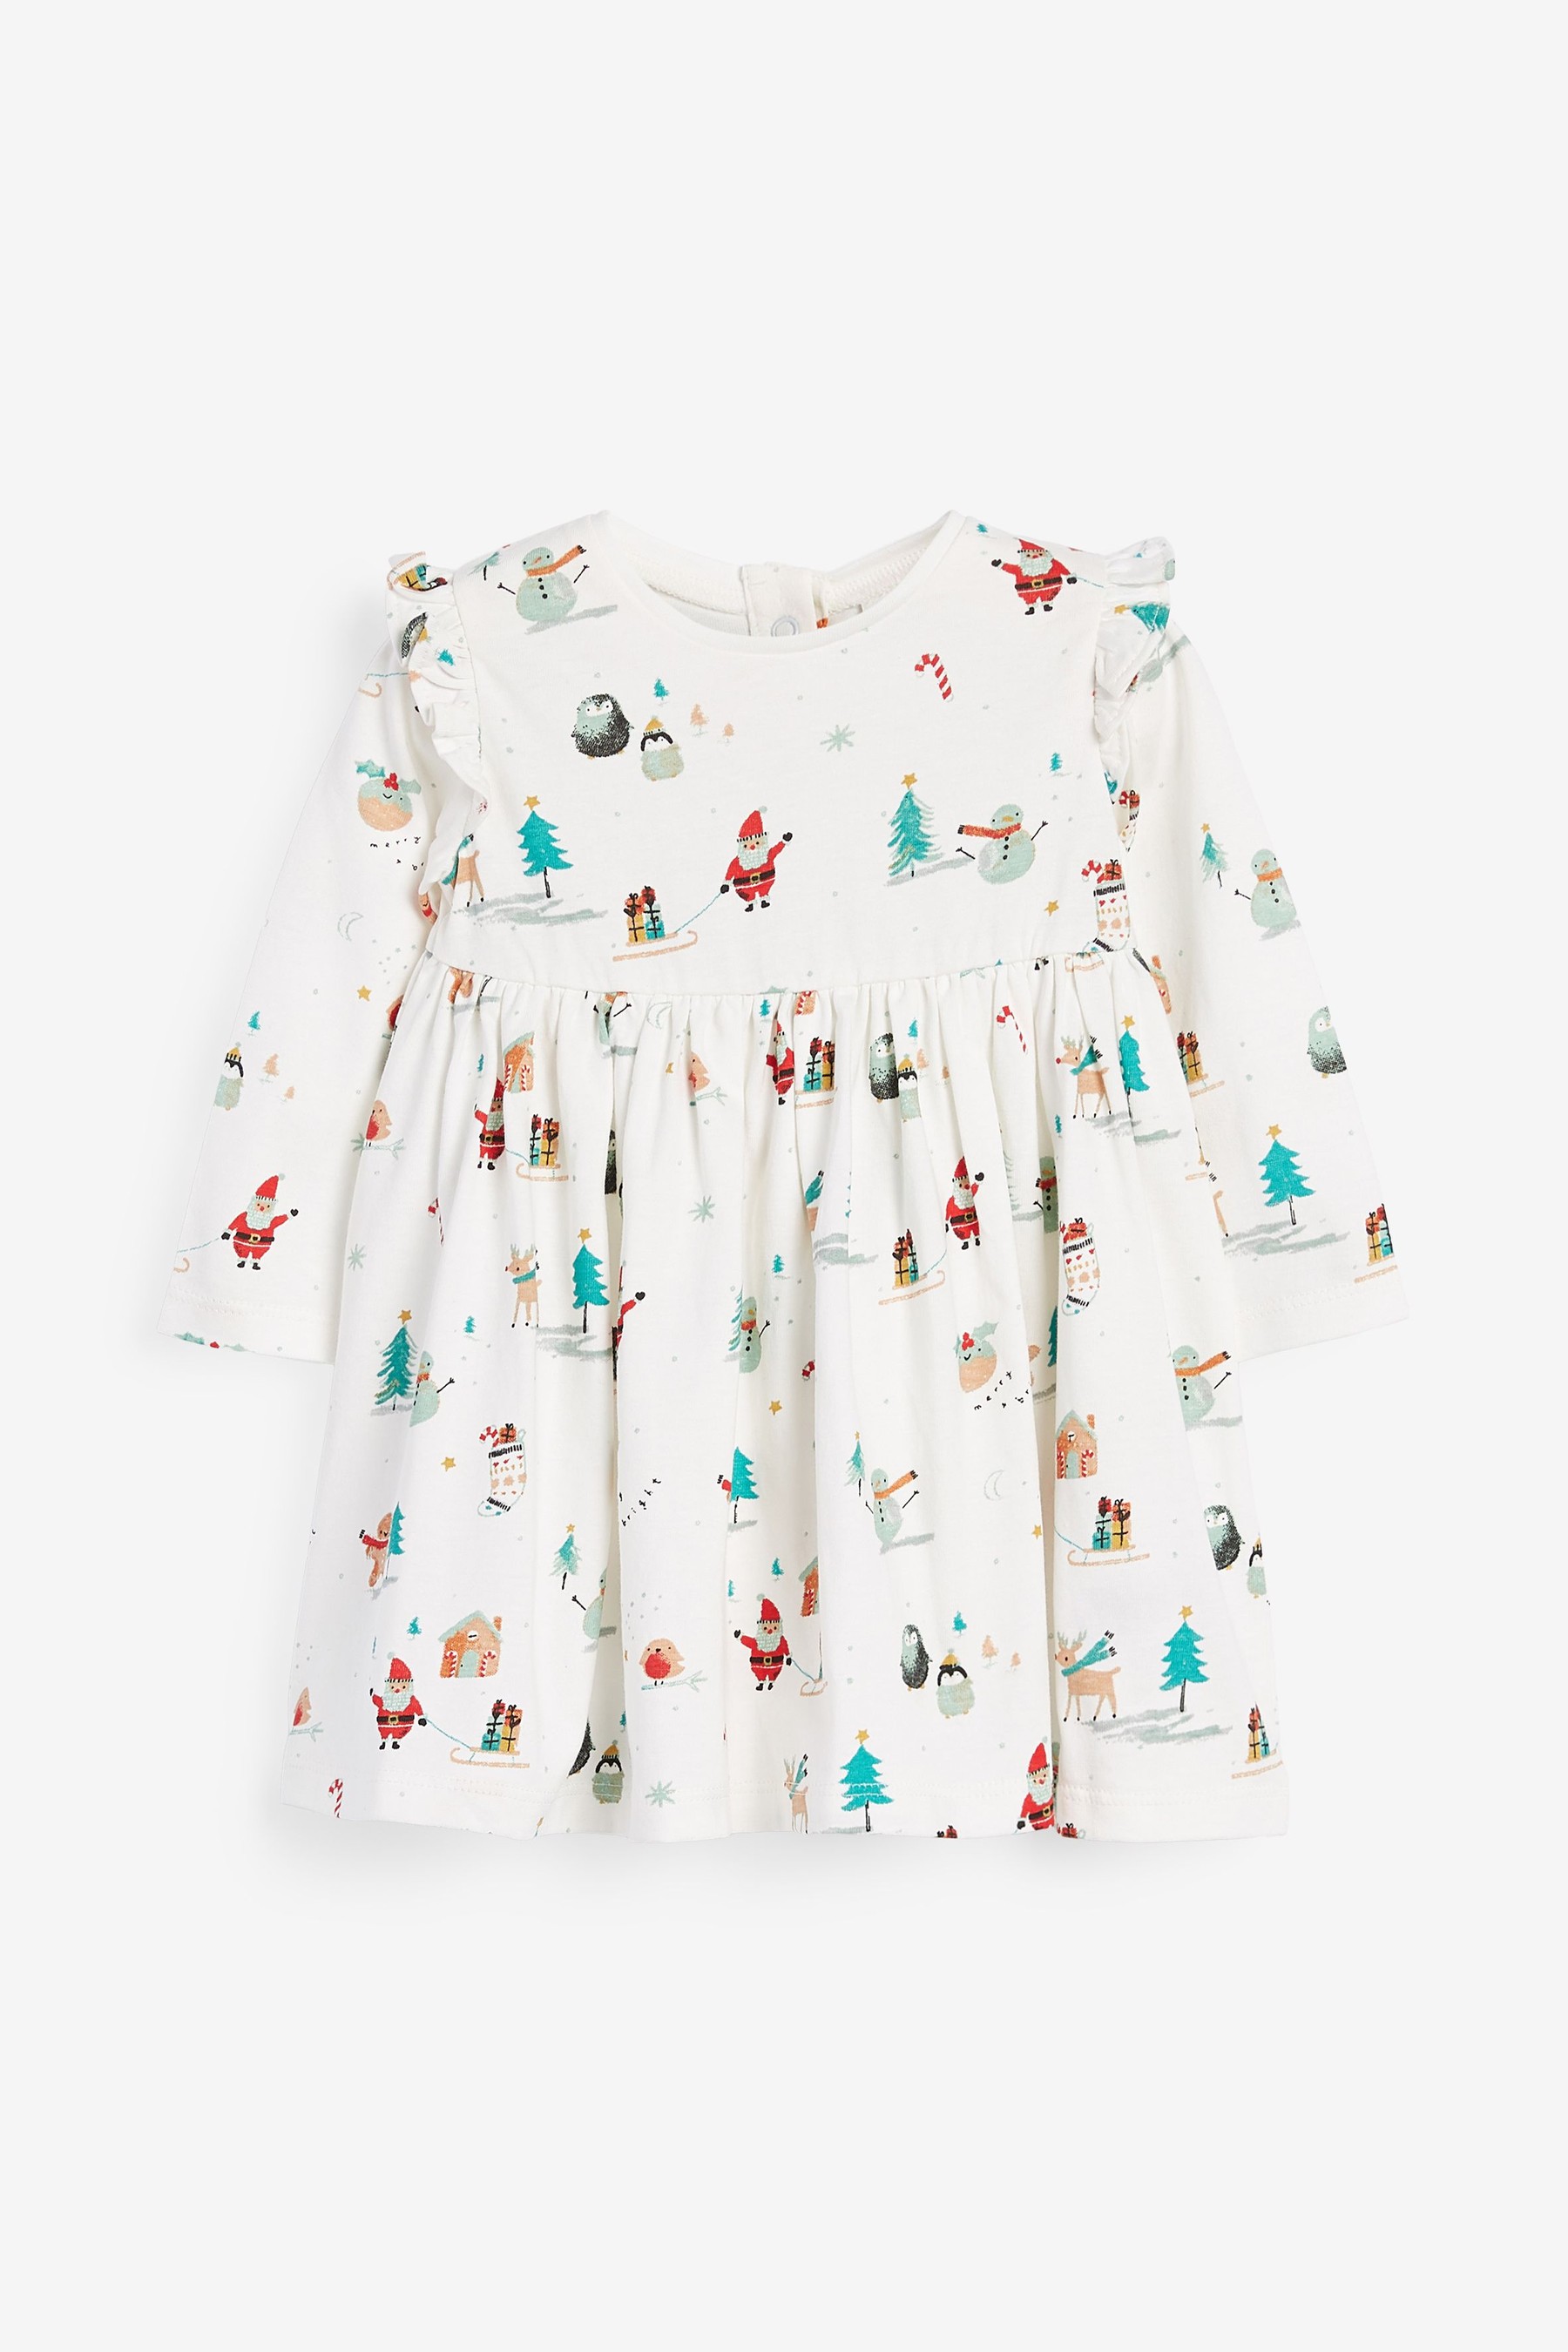 Rochiță bebeluși cu print de Crăciun